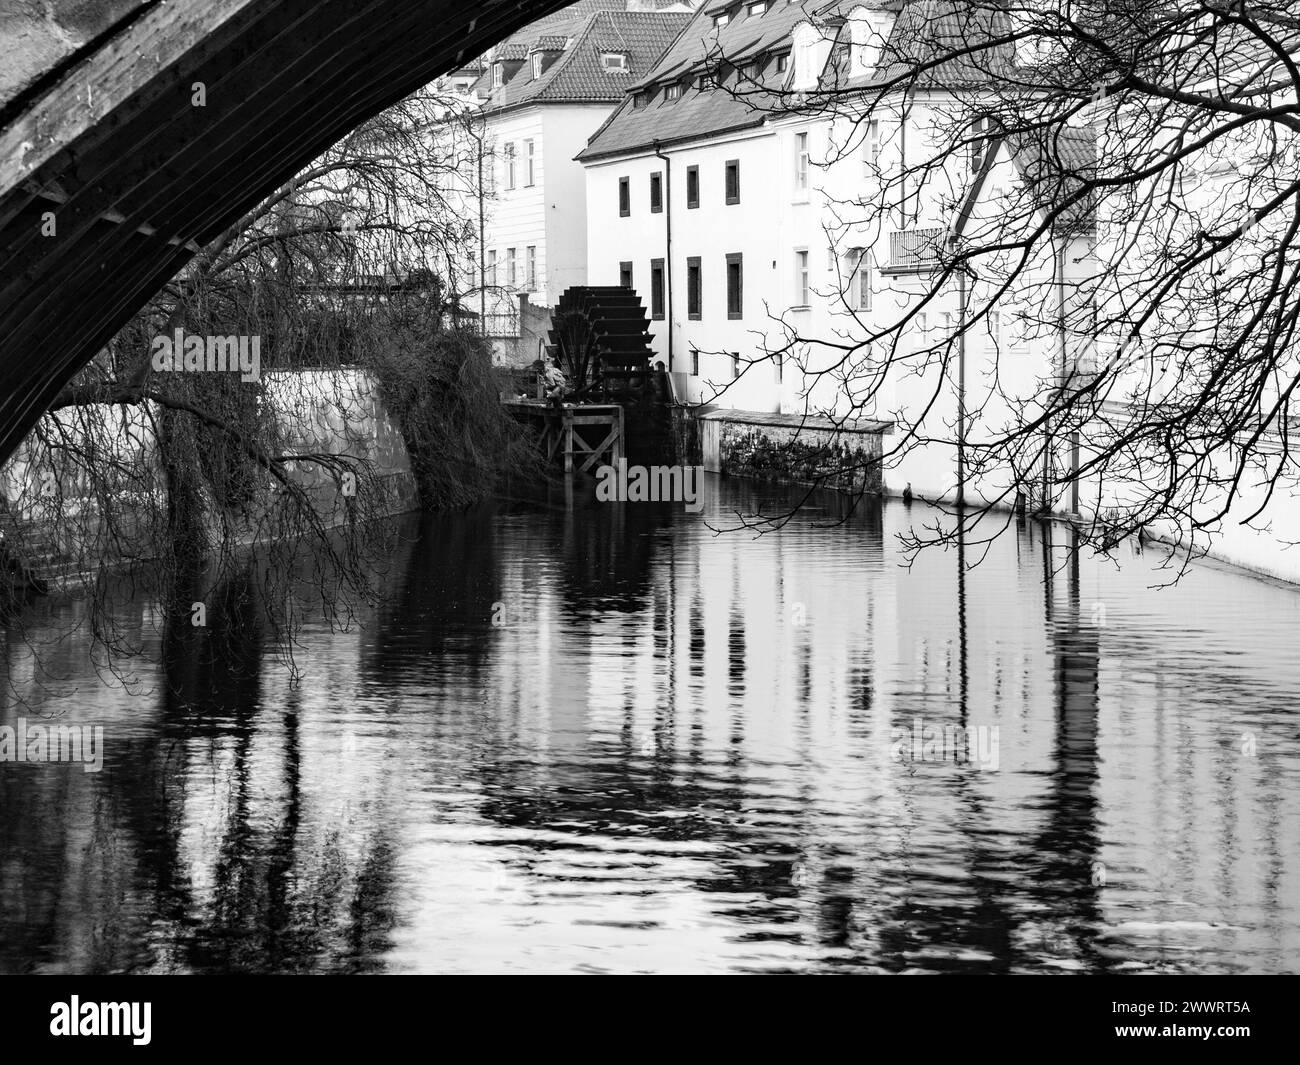 Certovka, fiume del Diavolo, con mulino ad acqua sull'isola di Kampa, Praga, Repubblica Ceca. Immagine in bianco e nero. Foto Stock